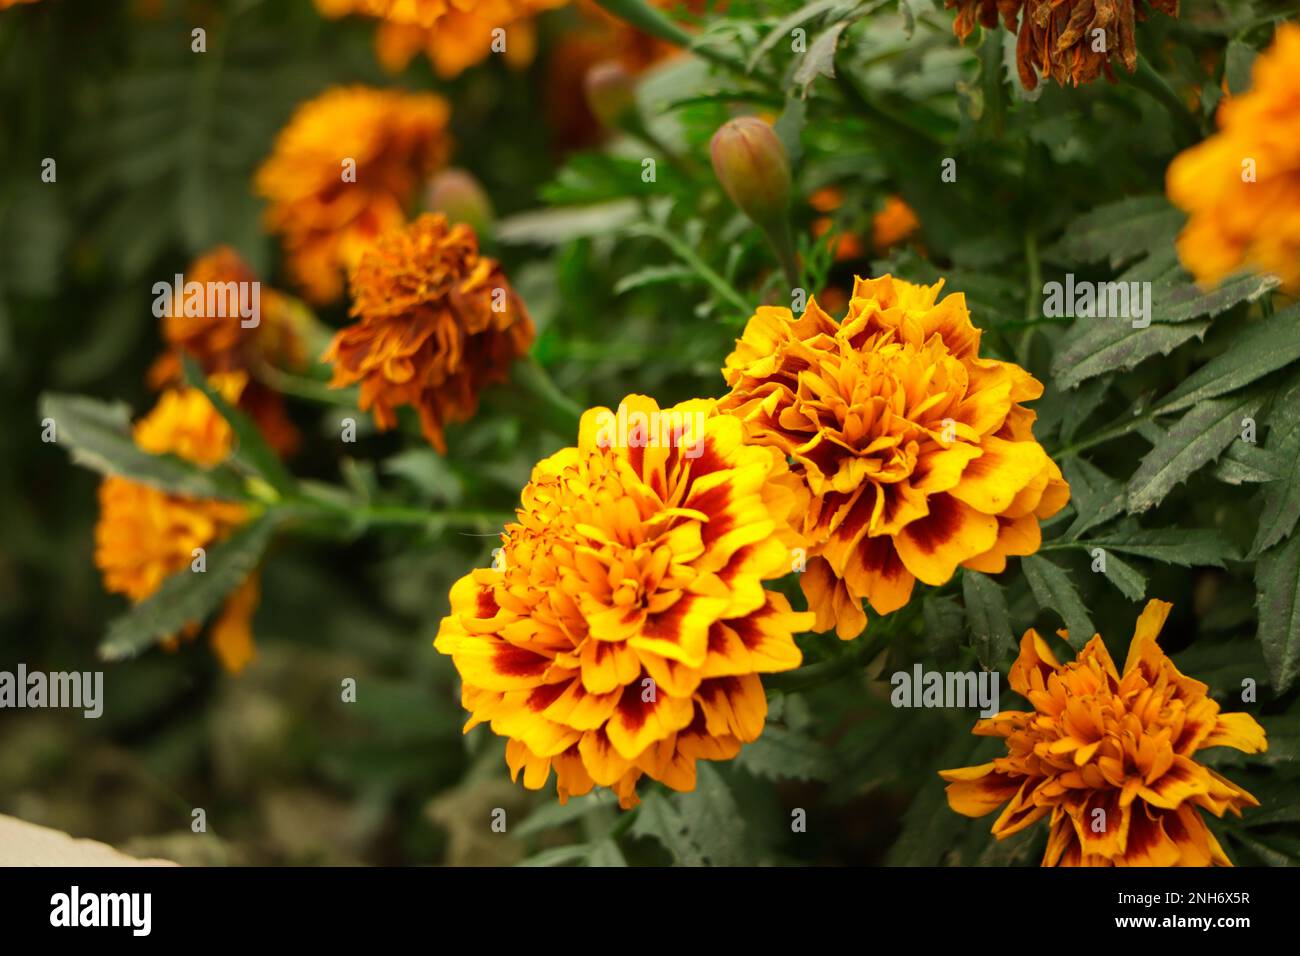 Incredibile fiore di marigold messicano in giardino, sulla naturale bella messa a fuoco background.selection. Foto Stock